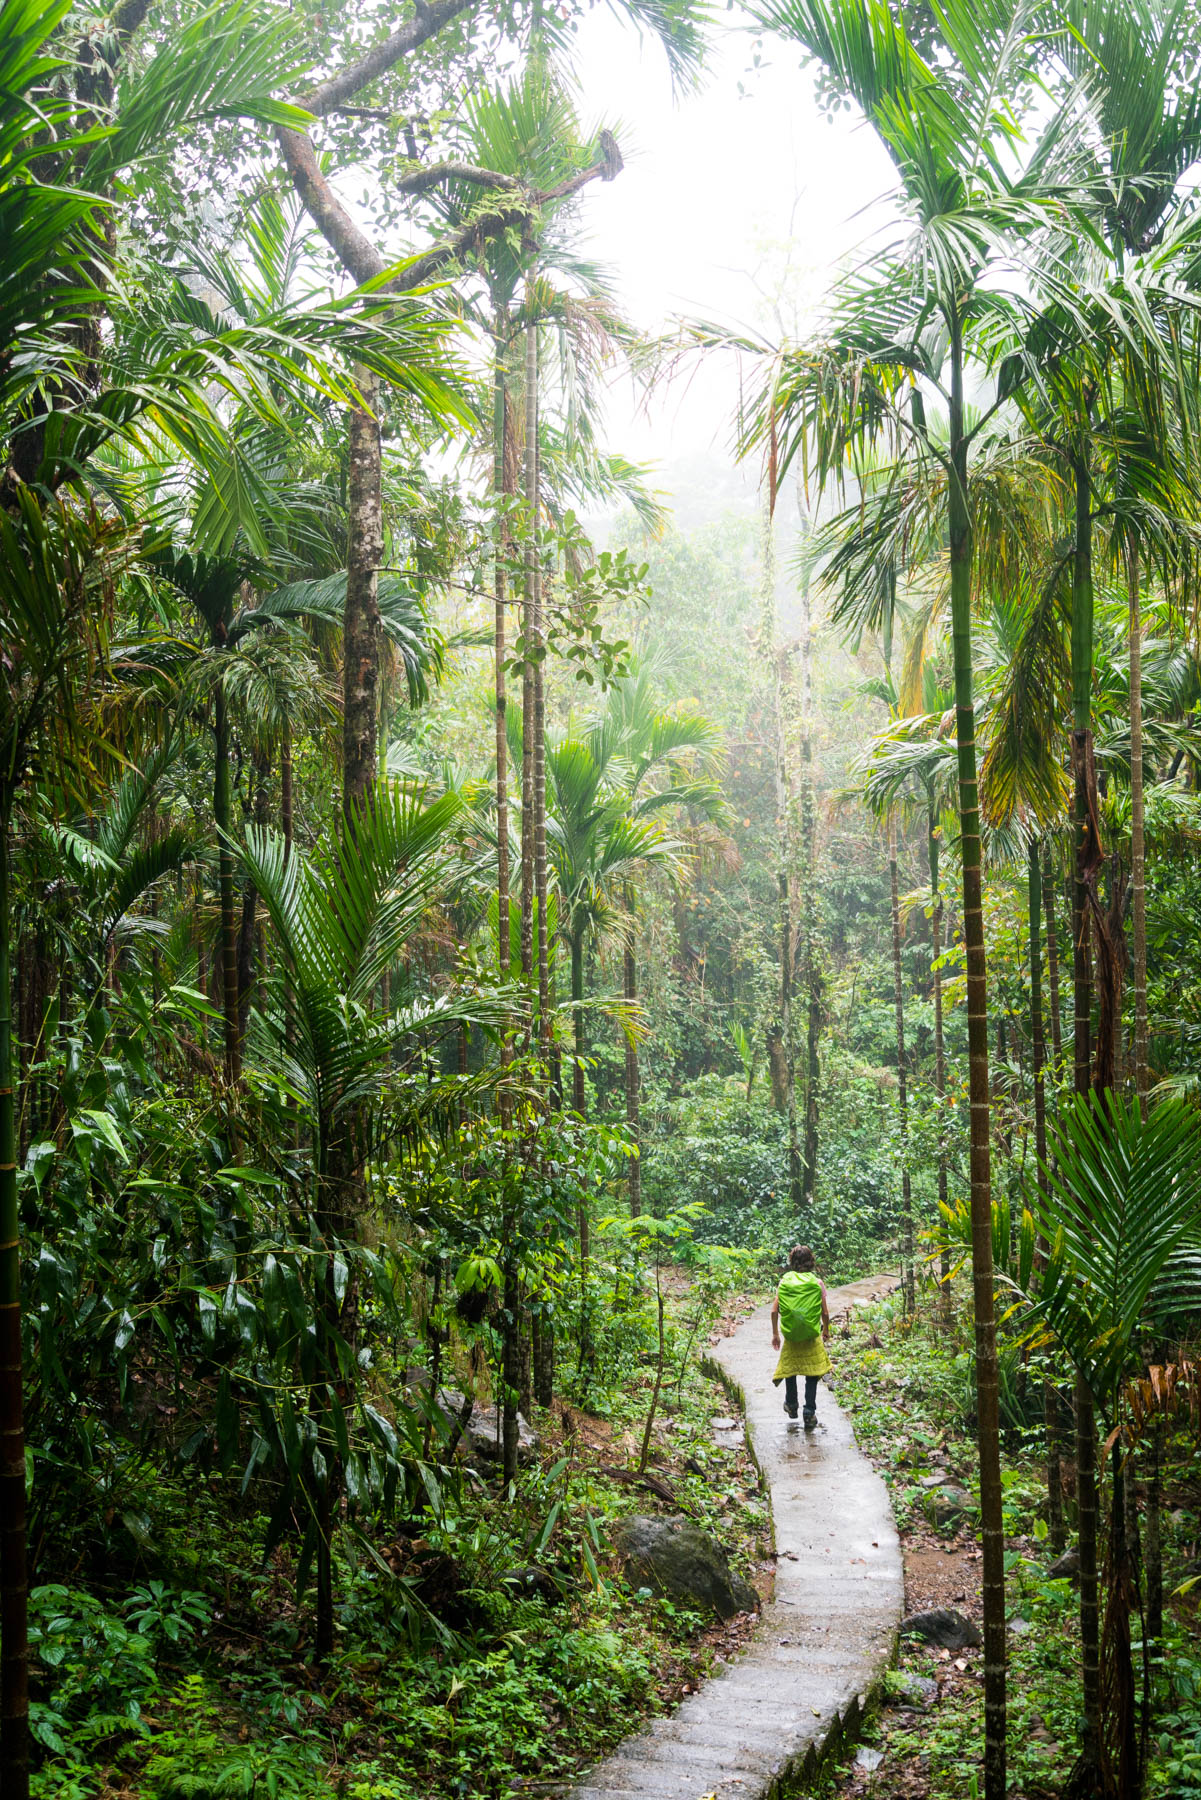 A boy trekking through the jungle